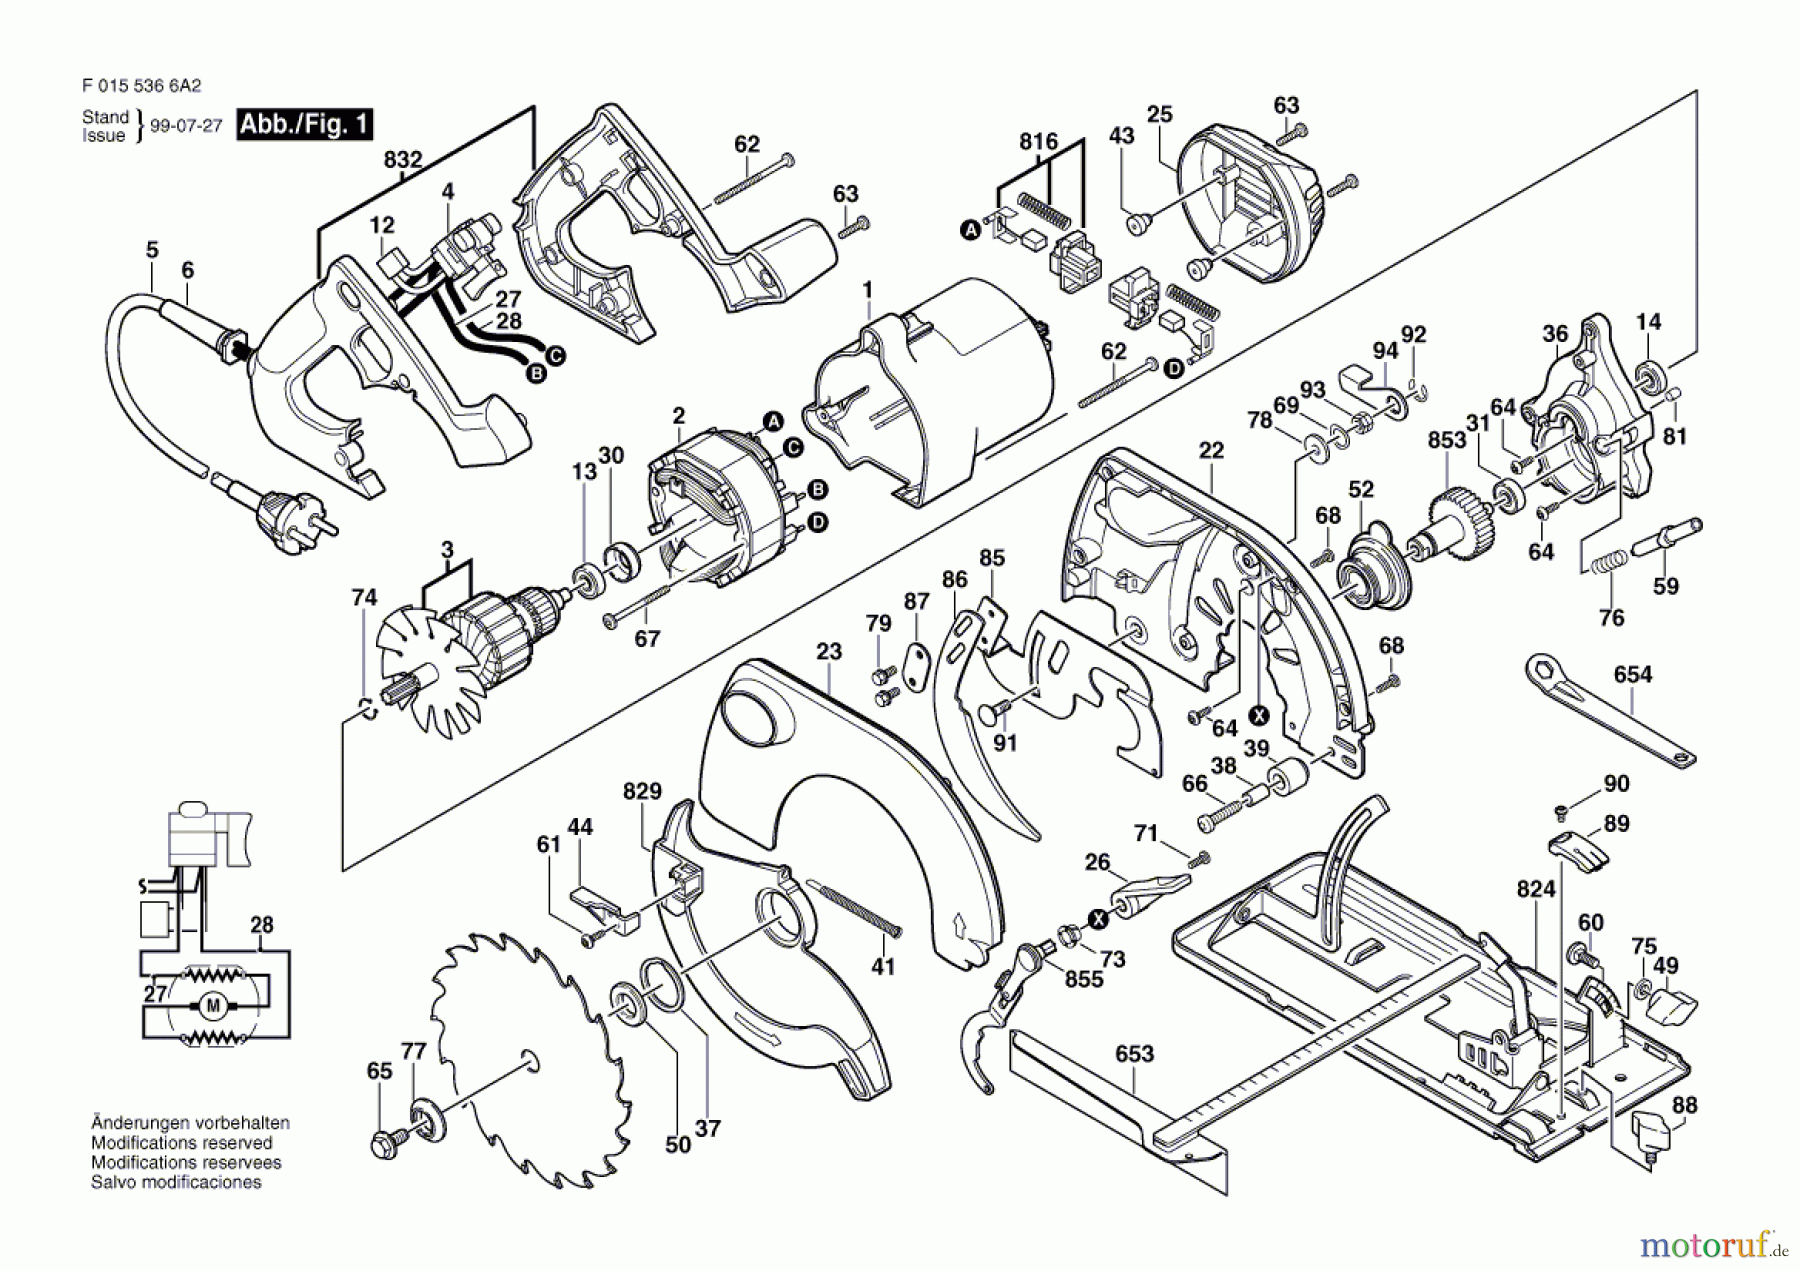  Bosch Werkzeug Kreissäge 5366 Seite 1